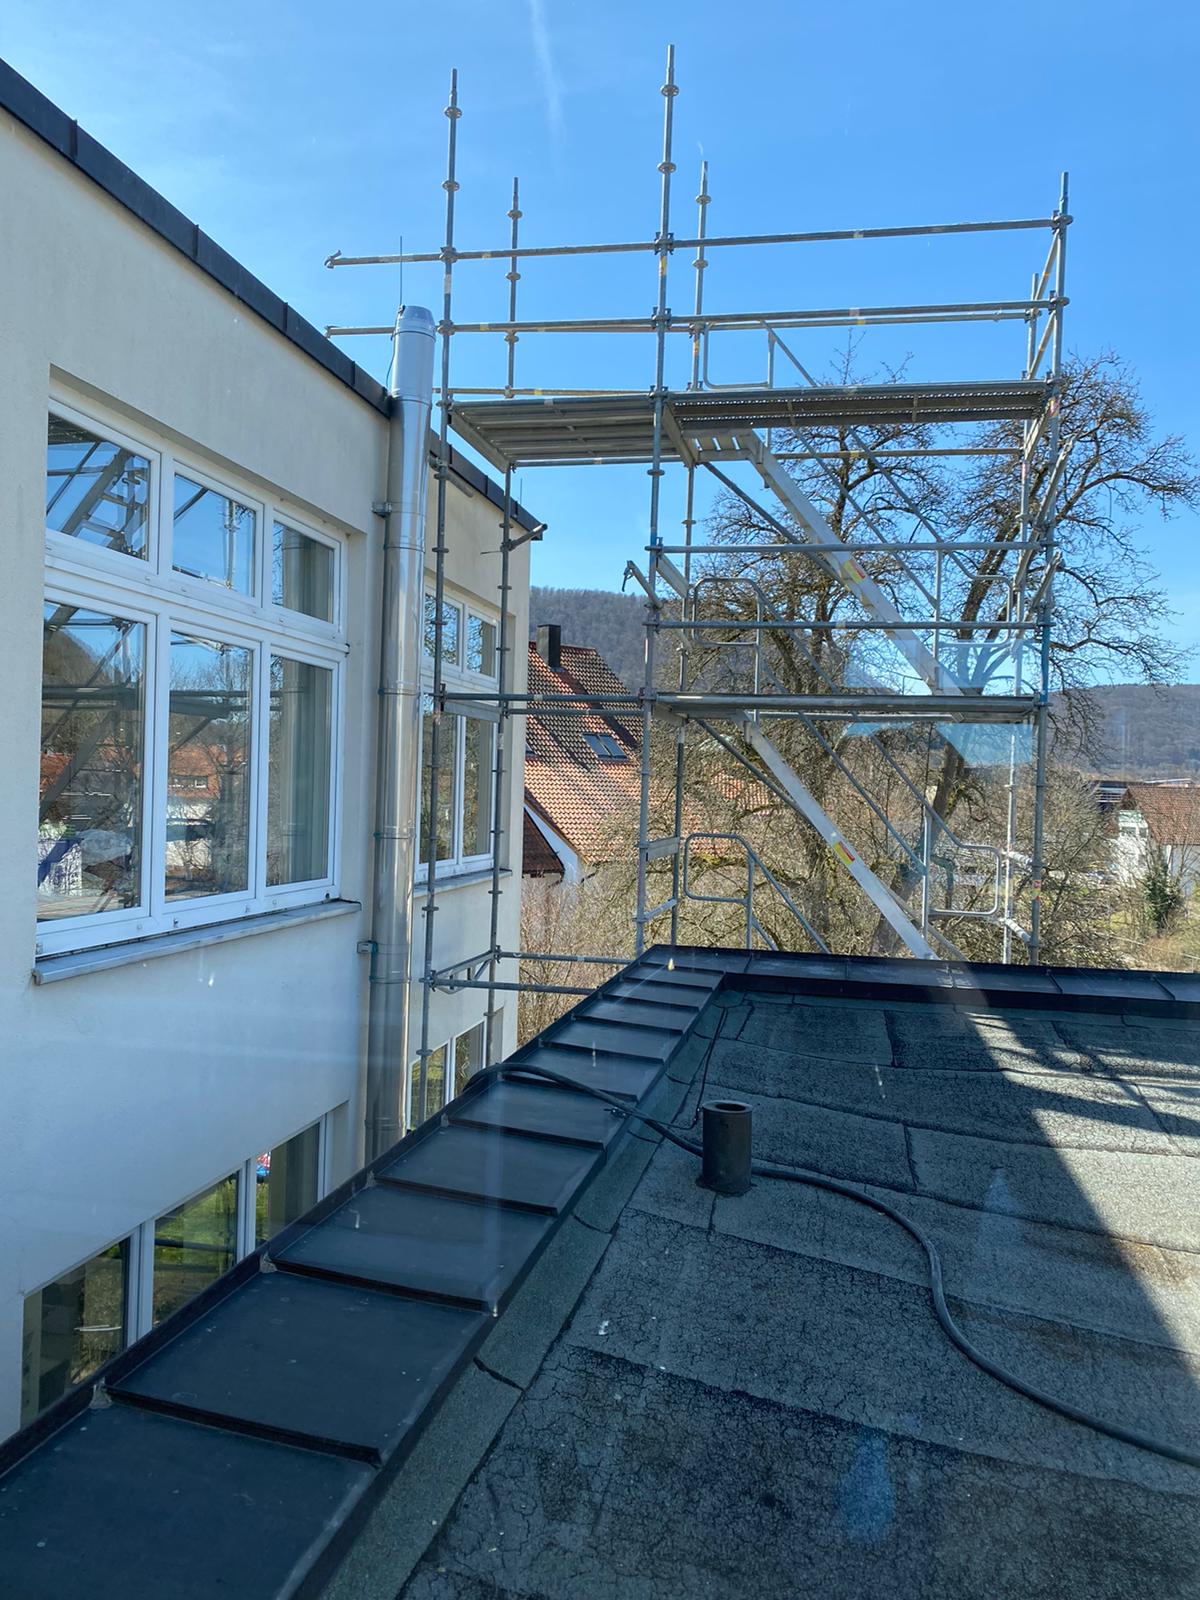 29/03/2021: Die Arbeiten am Dach beginnen